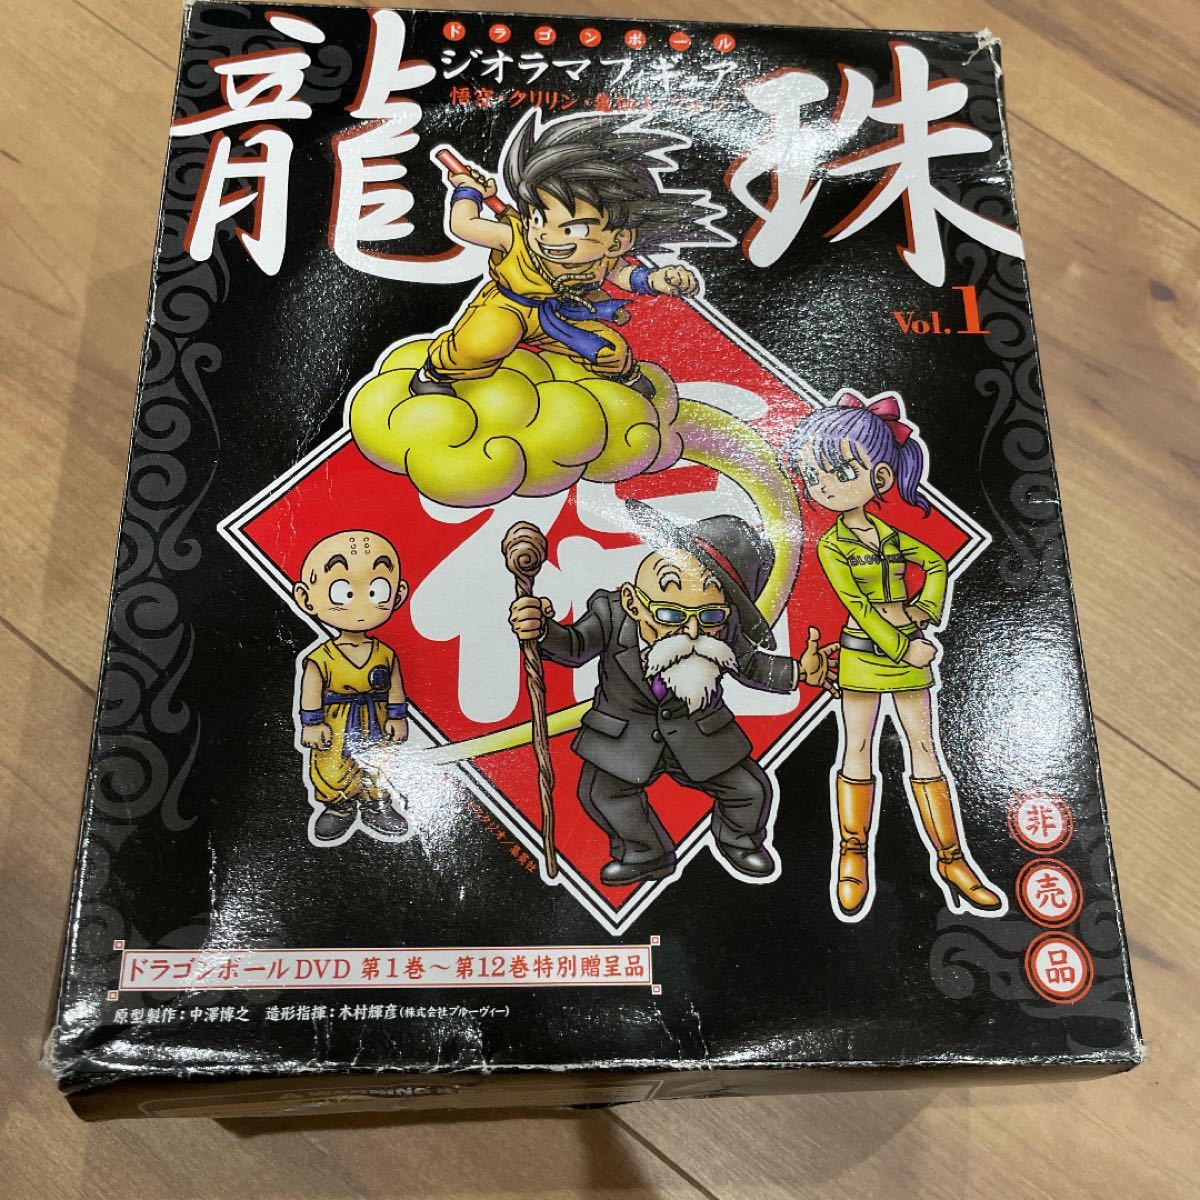 ドラゴンボール単巻DVD全巻購入応募者スペシャル特典セット